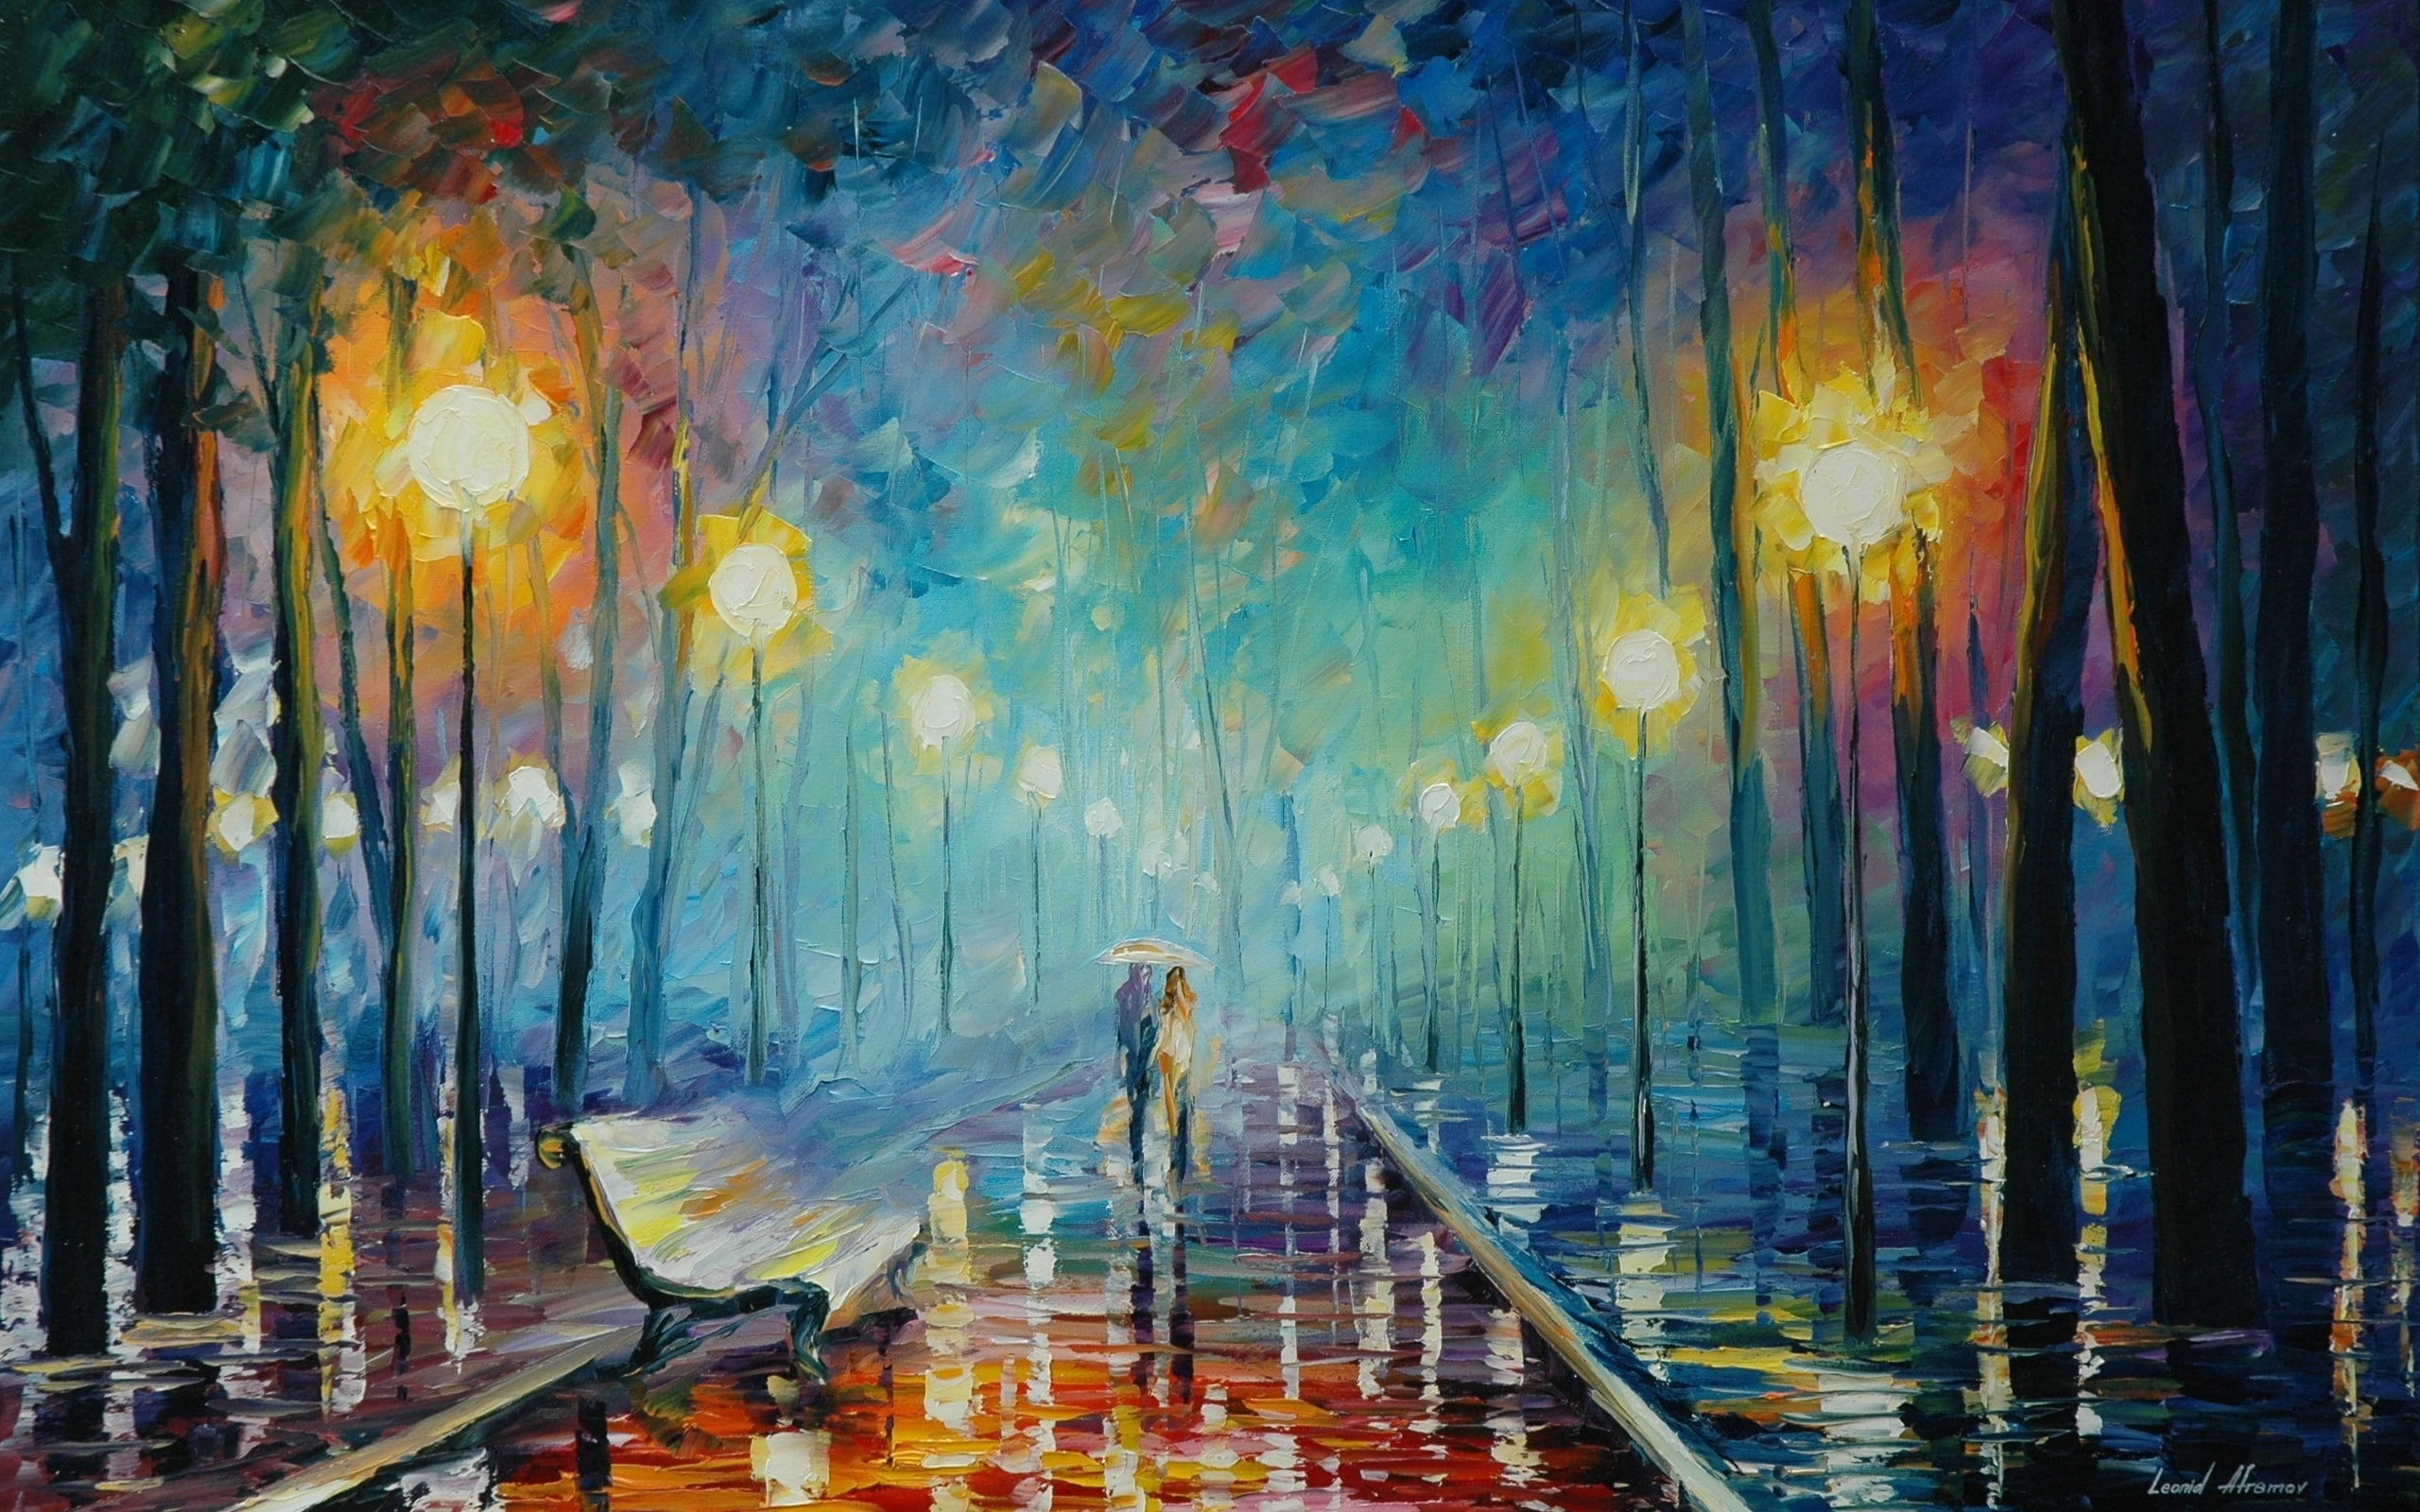 rain, umbrella, lovers, painting, trees, street light